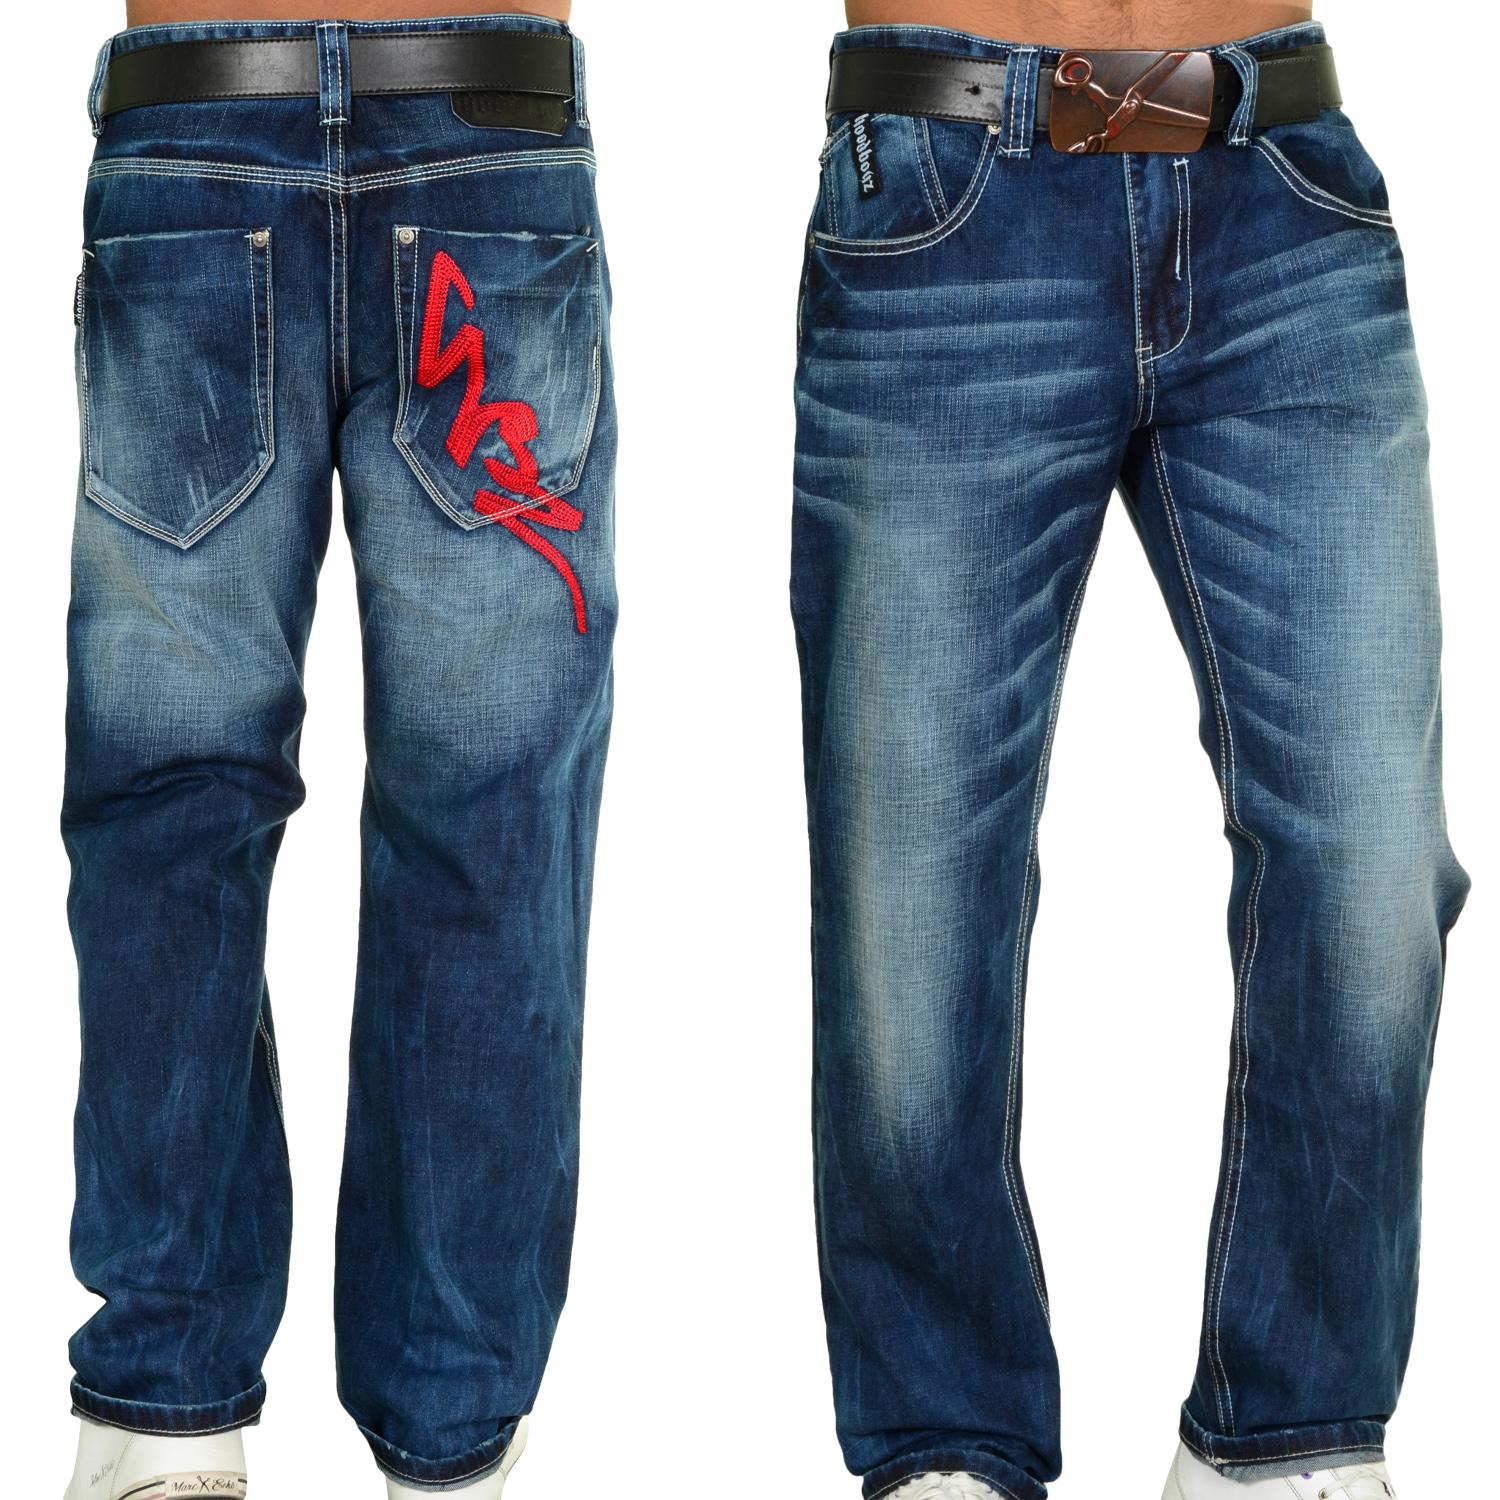 Foto Hoodboyz Dusty Indigo Wash Hombres Loose Fit Jeans De Color Azul Os... foto 337011